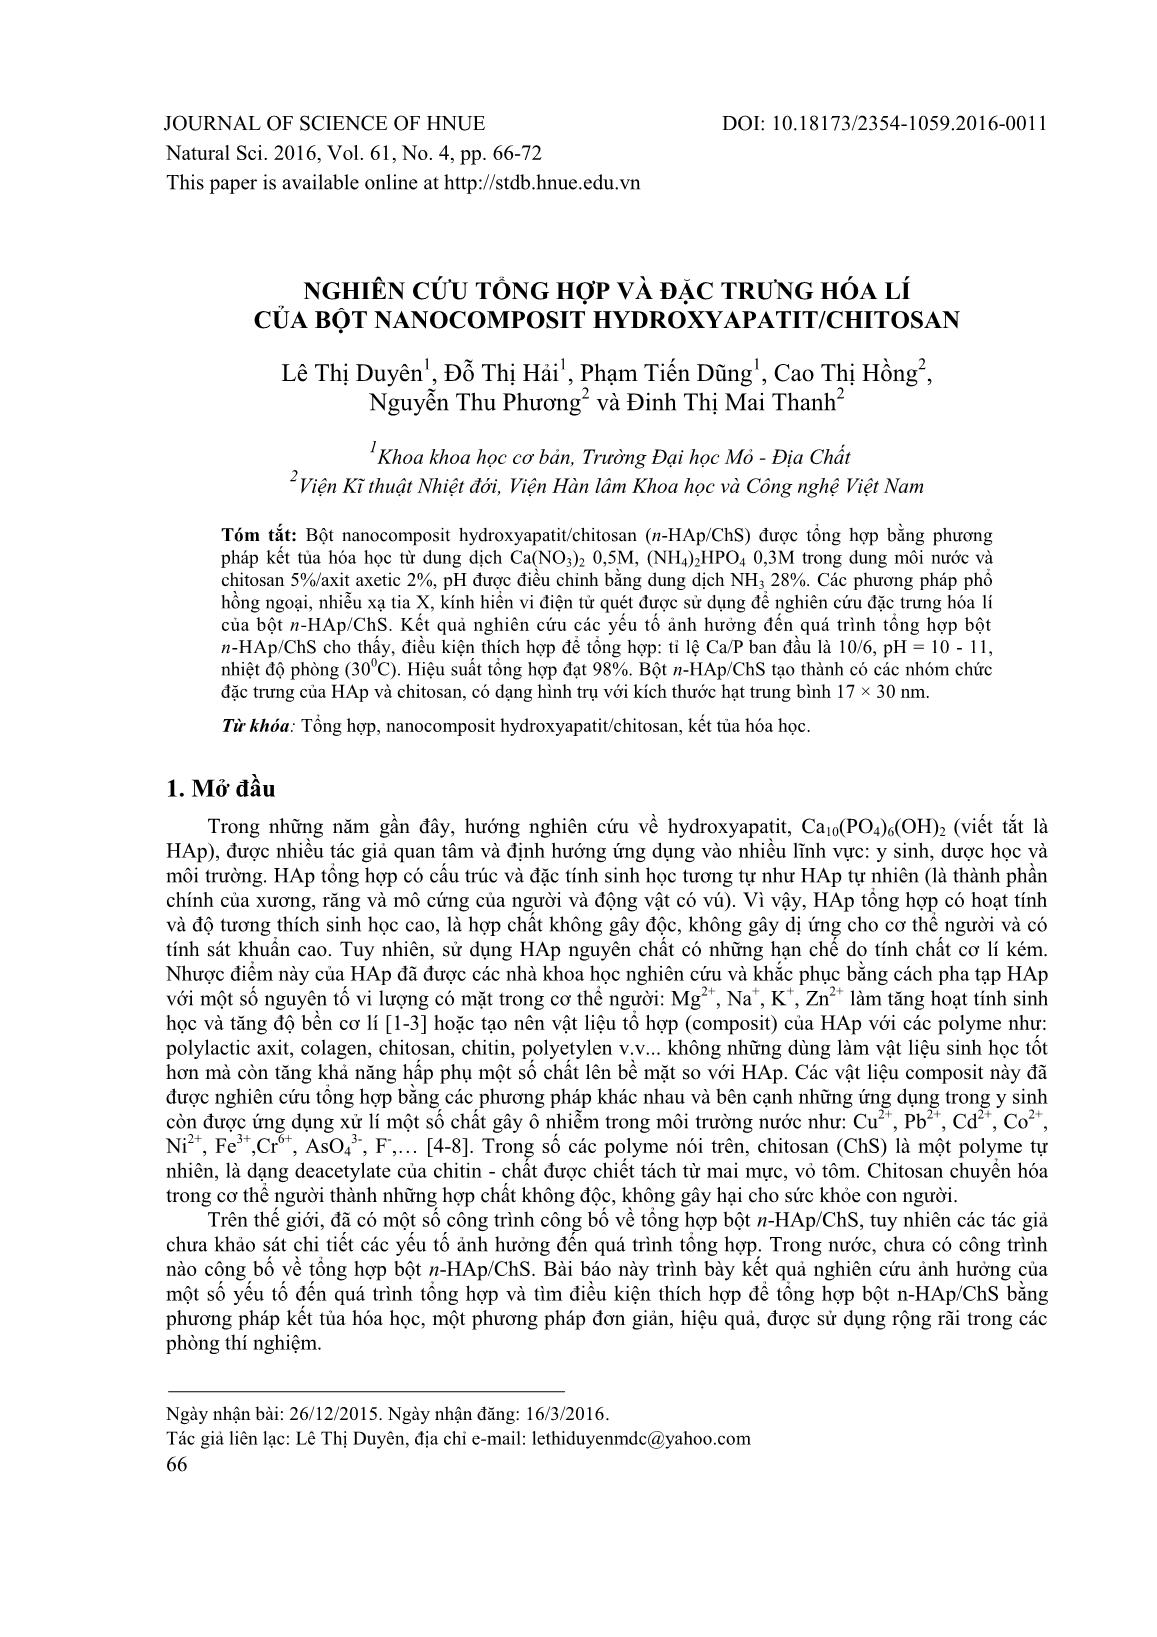 Nghiên cứu tổng hợp và đặc trưng hóa lí của bột Nanocomposit Hydroxyapatit/Chitosan trang 1